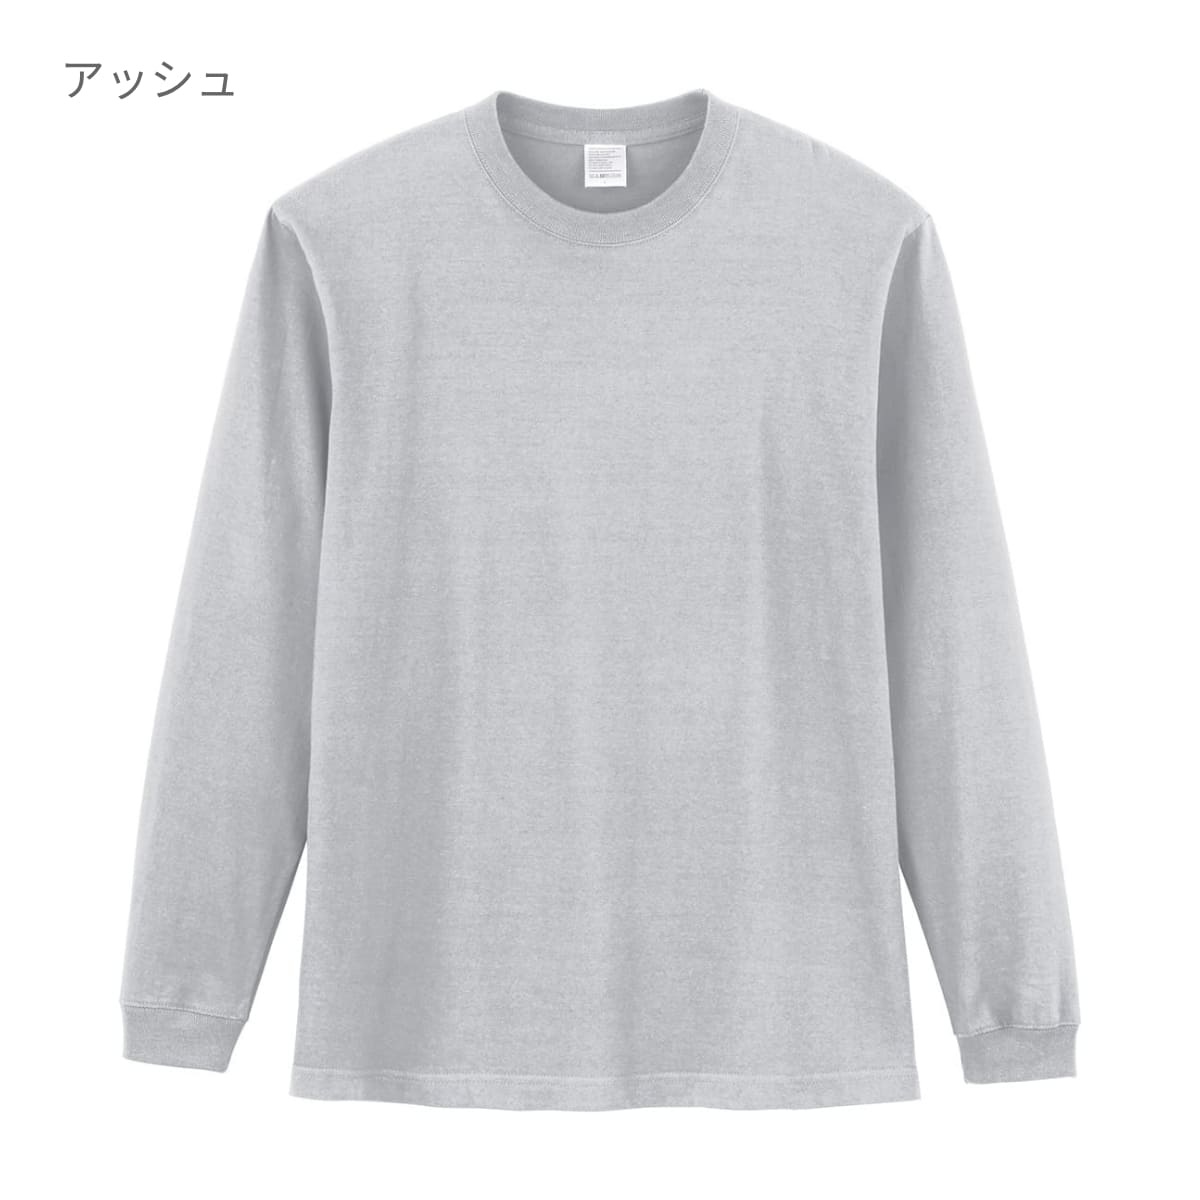 5.6オンス ハイグレードコットンロングスリーブTシャツ（カラー） | ビッグサイズ | 1枚 | MS1612O | アッシュ